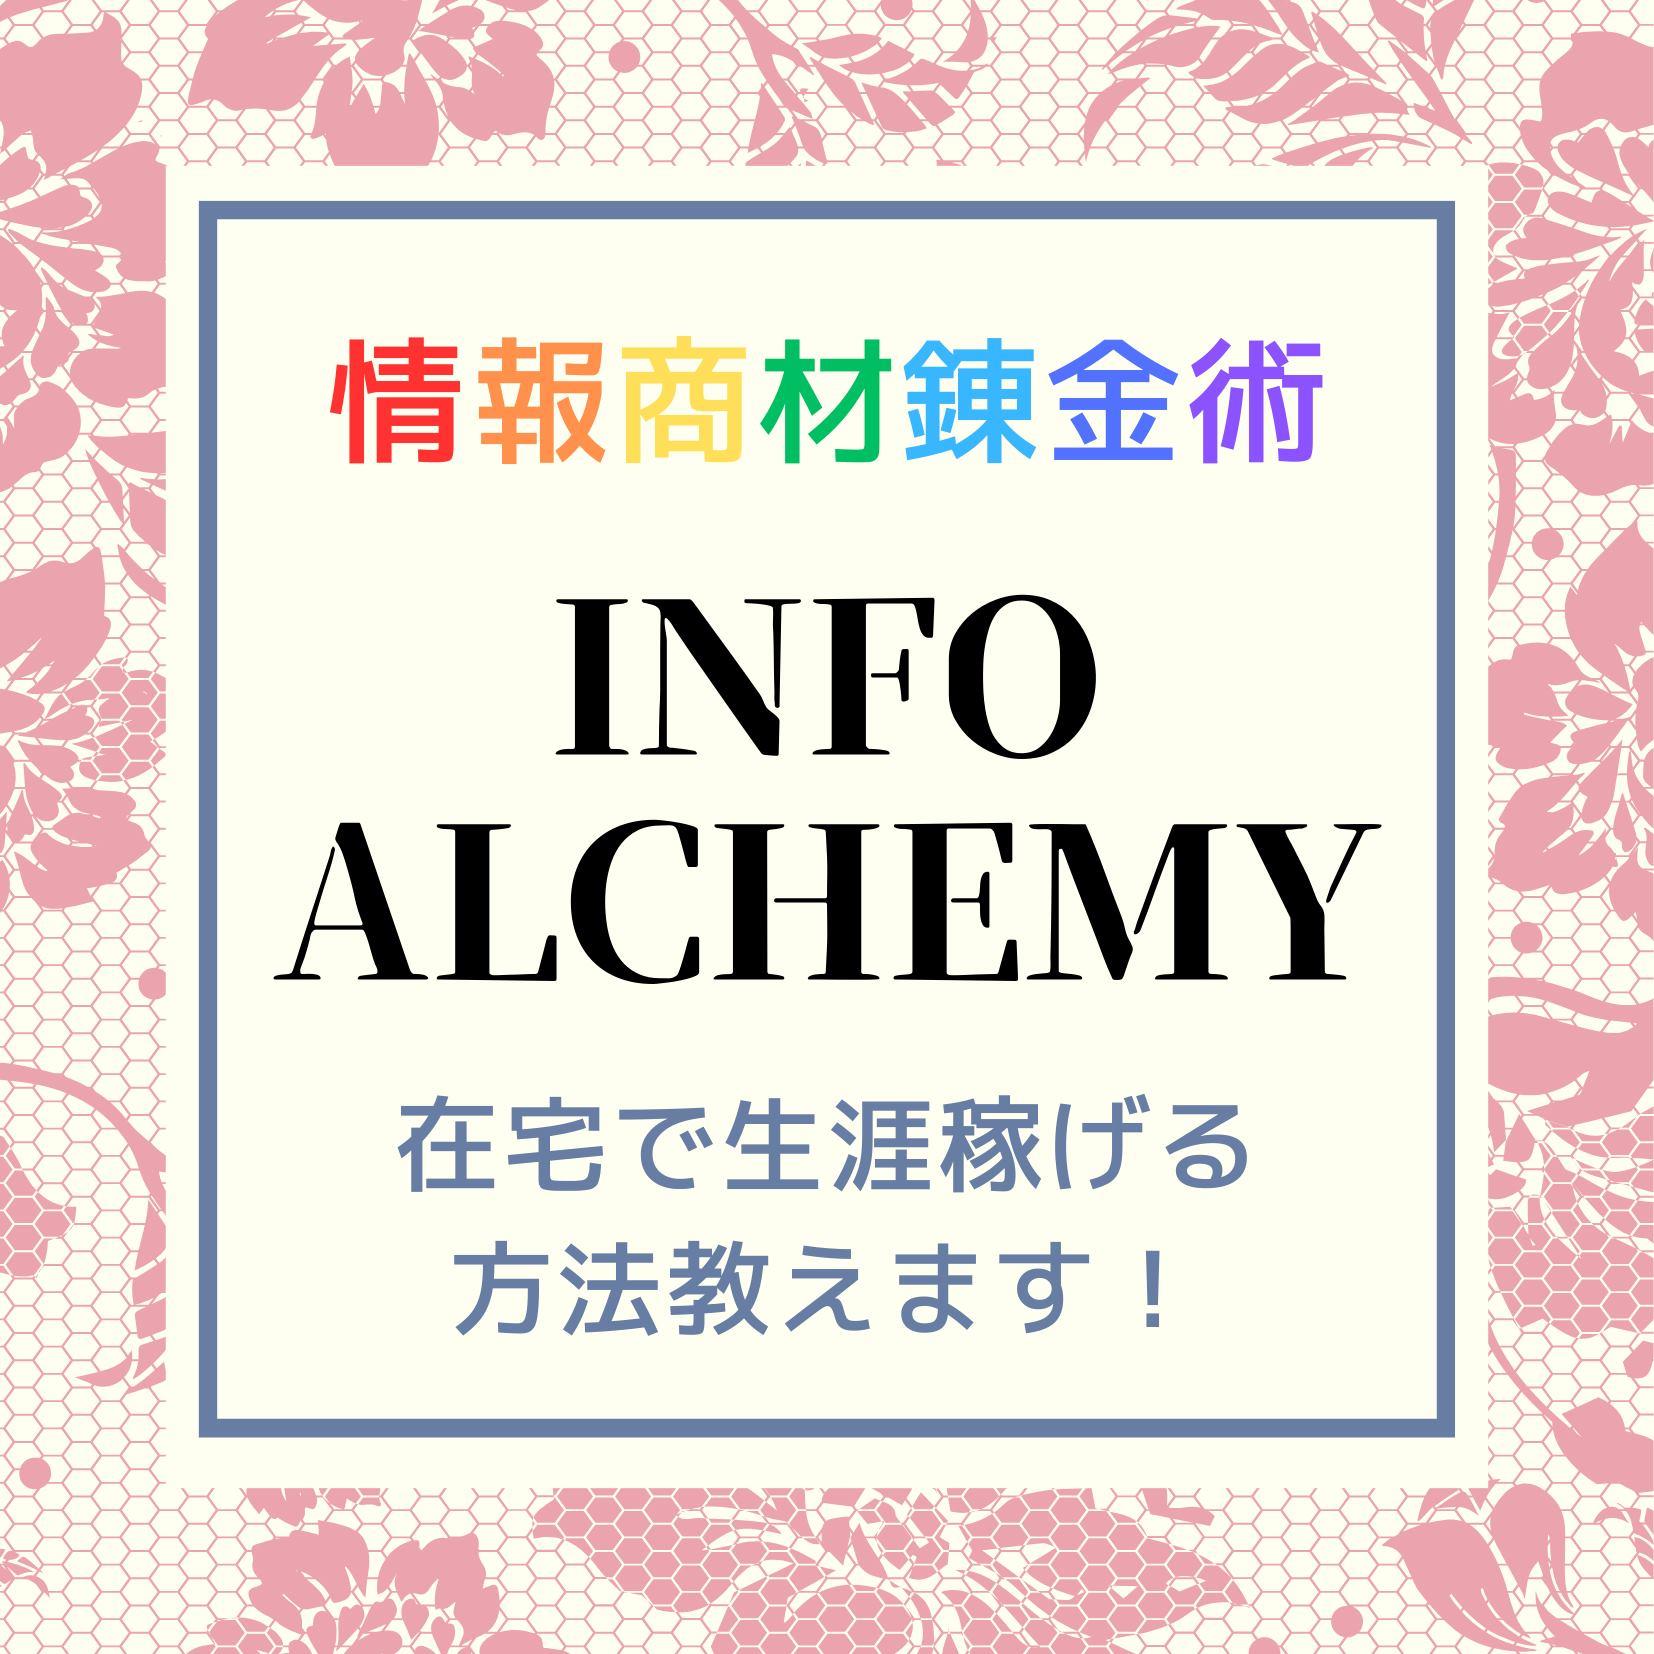 INFO ALCHEMY デジタル錬金術